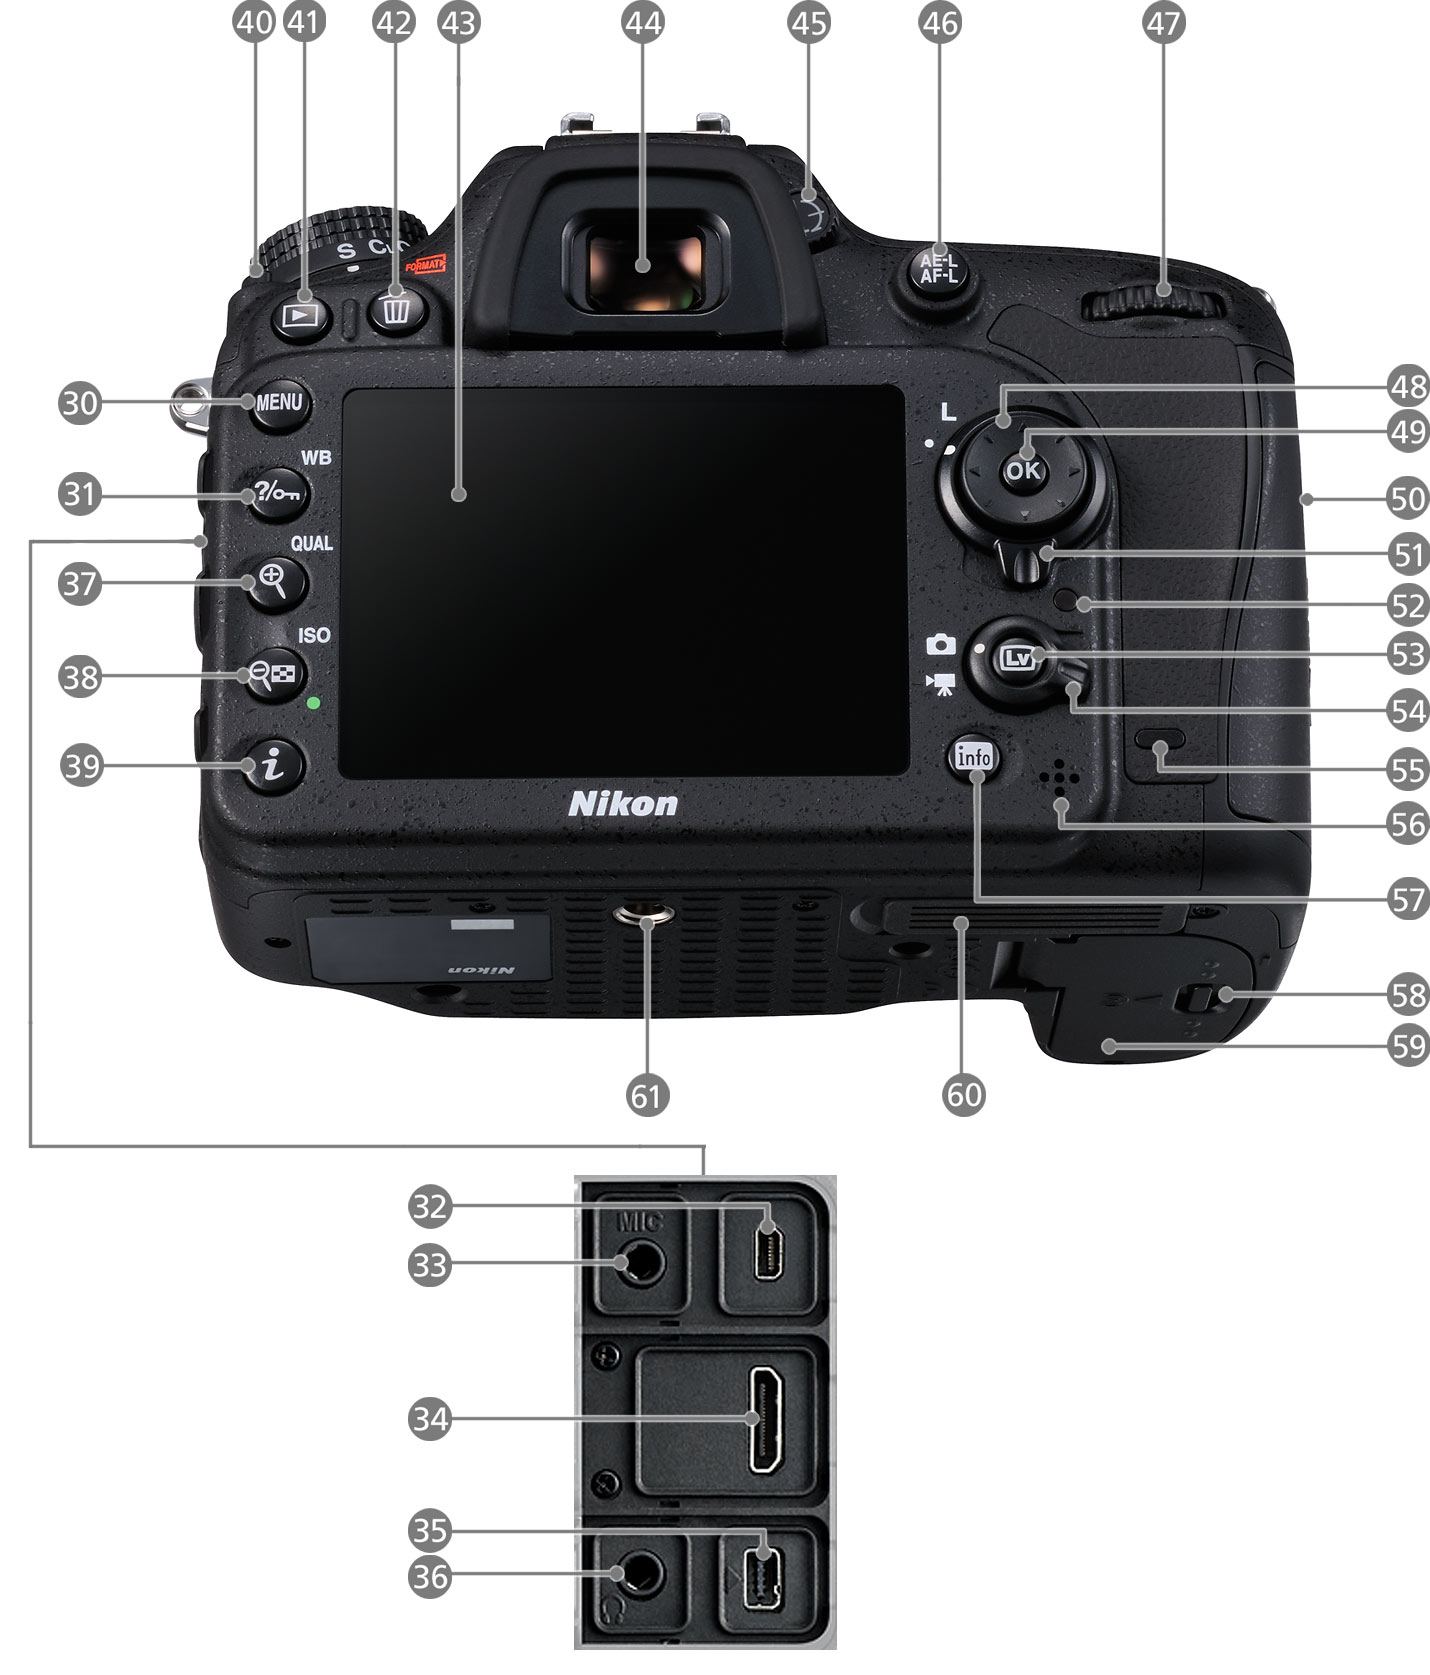 D7100 - 各部名称 | 一眼レフカメラ | ニコンイメージング